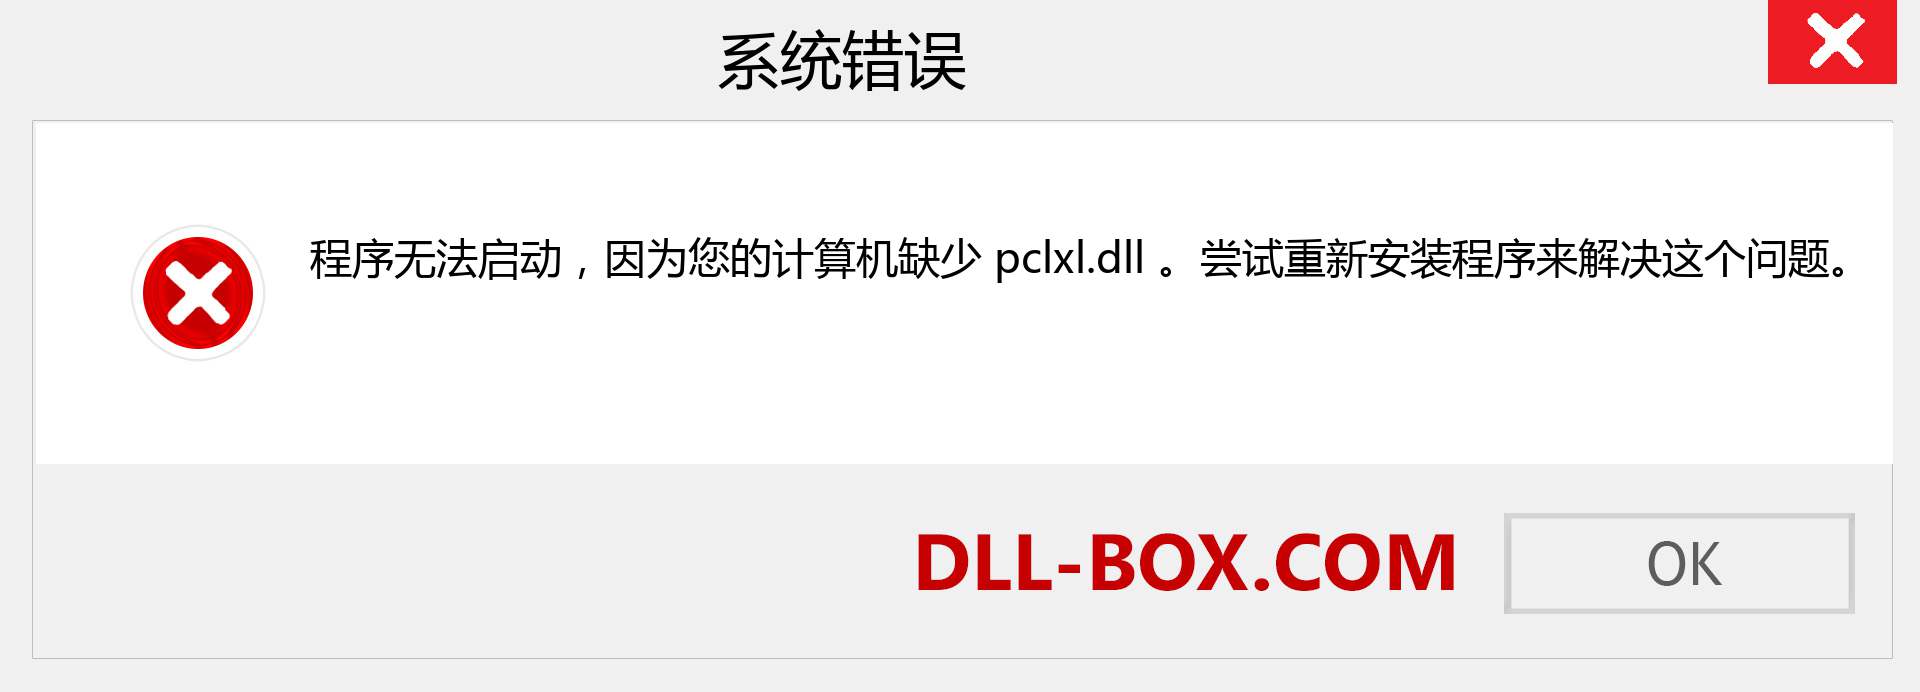 pclxl.dll 文件丢失？。 适用于 Windows 7、8、10 的下载 - 修复 Windows、照片、图像上的 pclxl dll 丢失错误